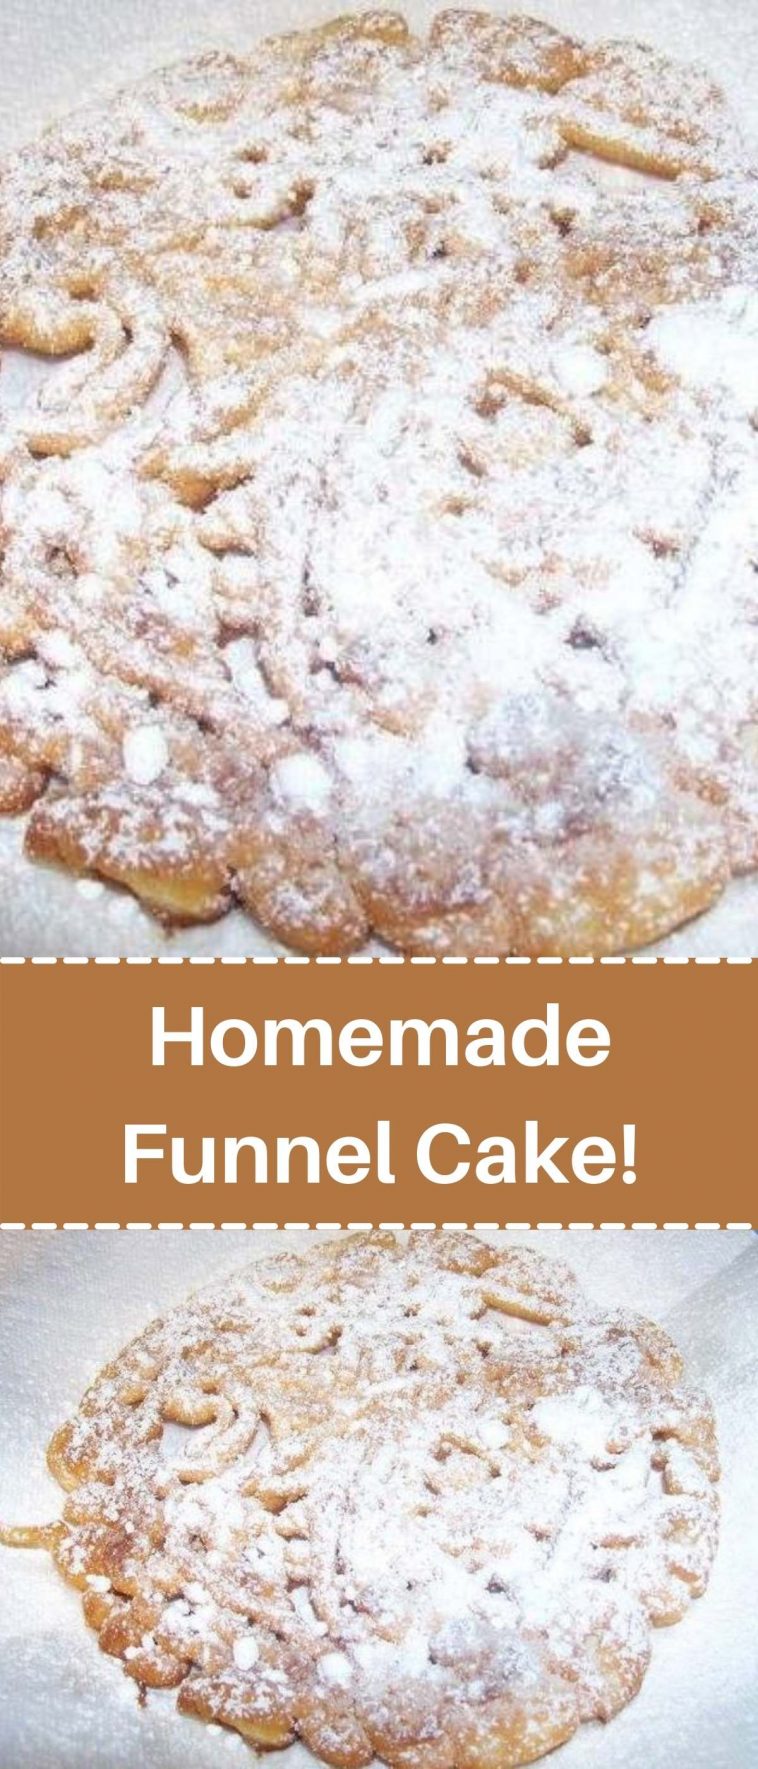 Homemade Funnel Cake!